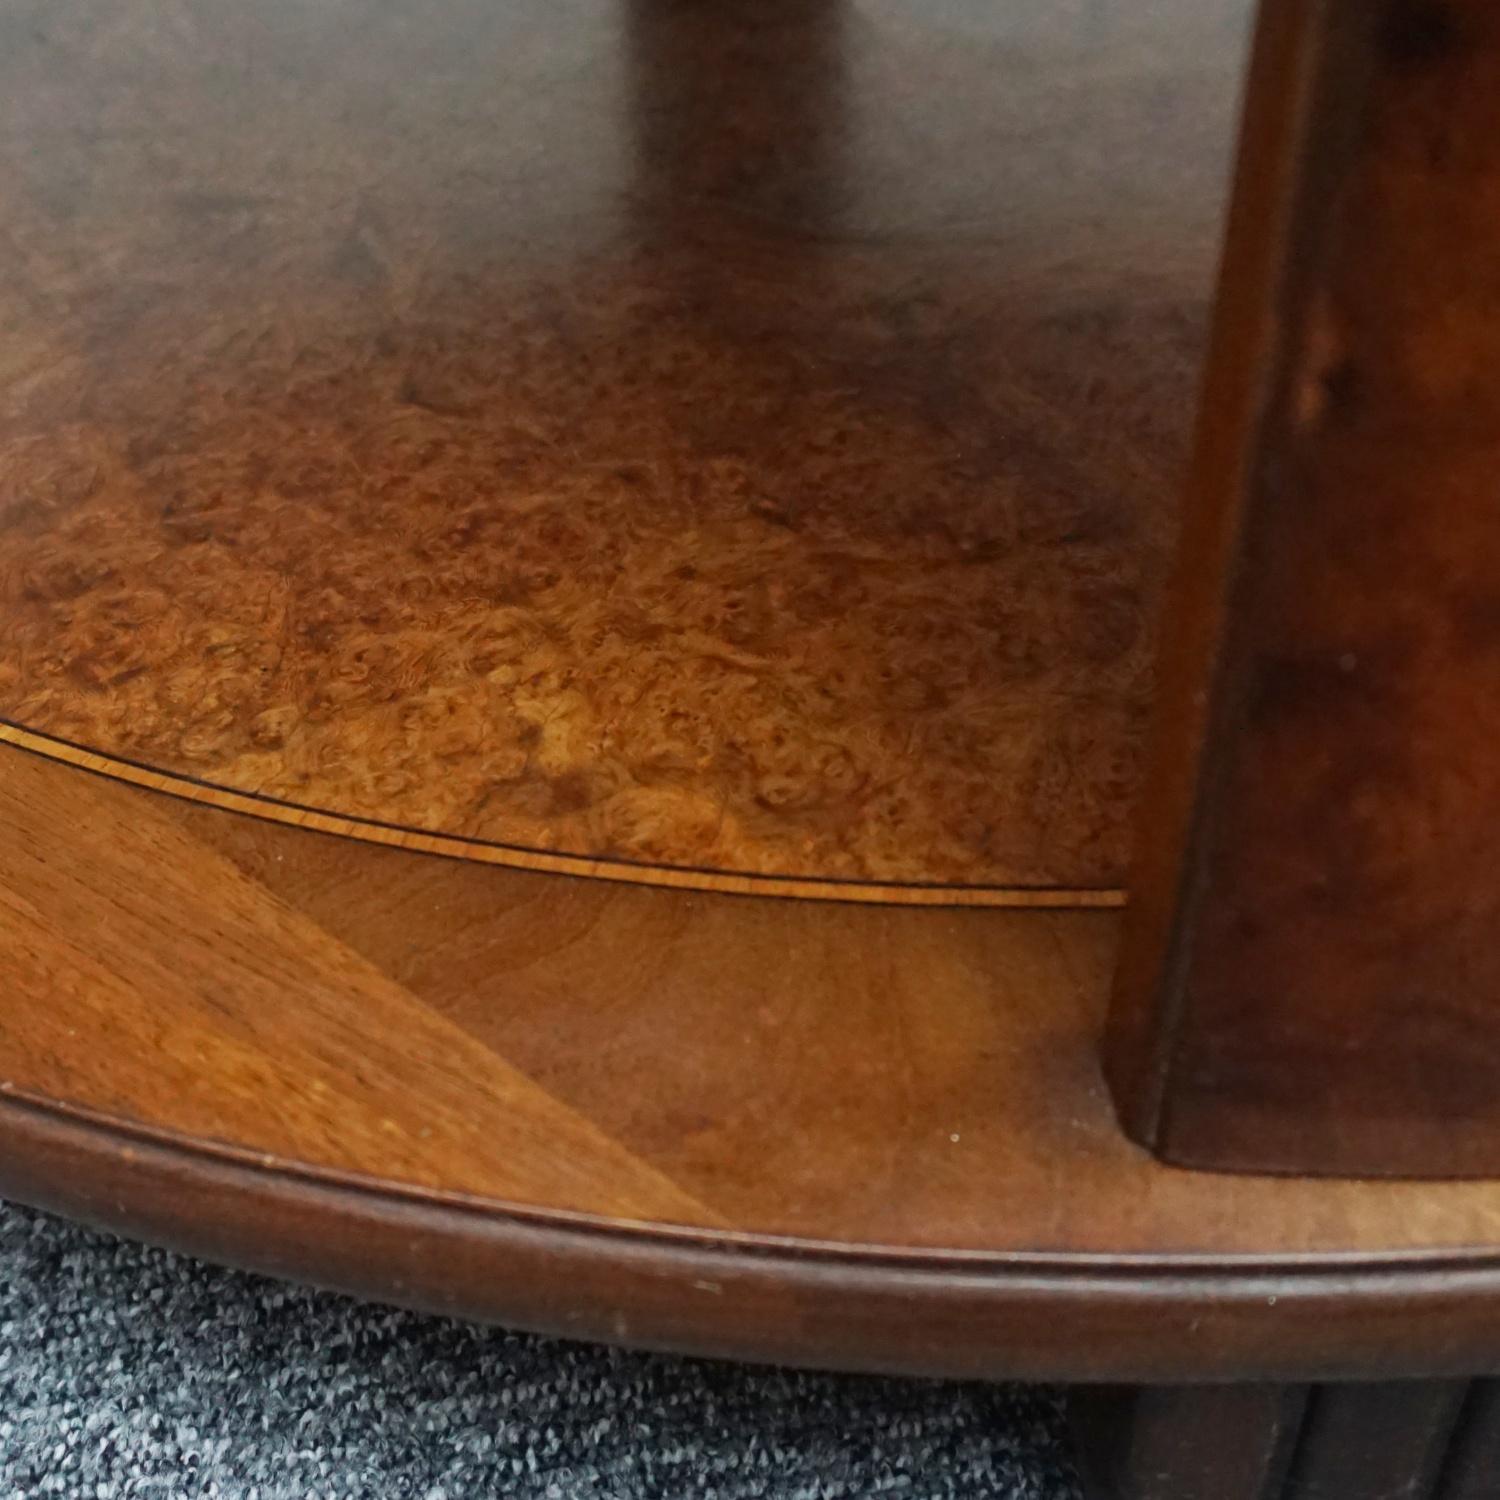 Zweistöckiger Art Deco-Mitteltisch. Massives Nussbaumholz mit Wurzelholz und gemasertem Nussbaumfurnier. Obere Tischplatte mit Kugeltrennwänden über detailliert gestuften Sockeln, die zu einer abgerundeten zentralen Tischplatte führen.